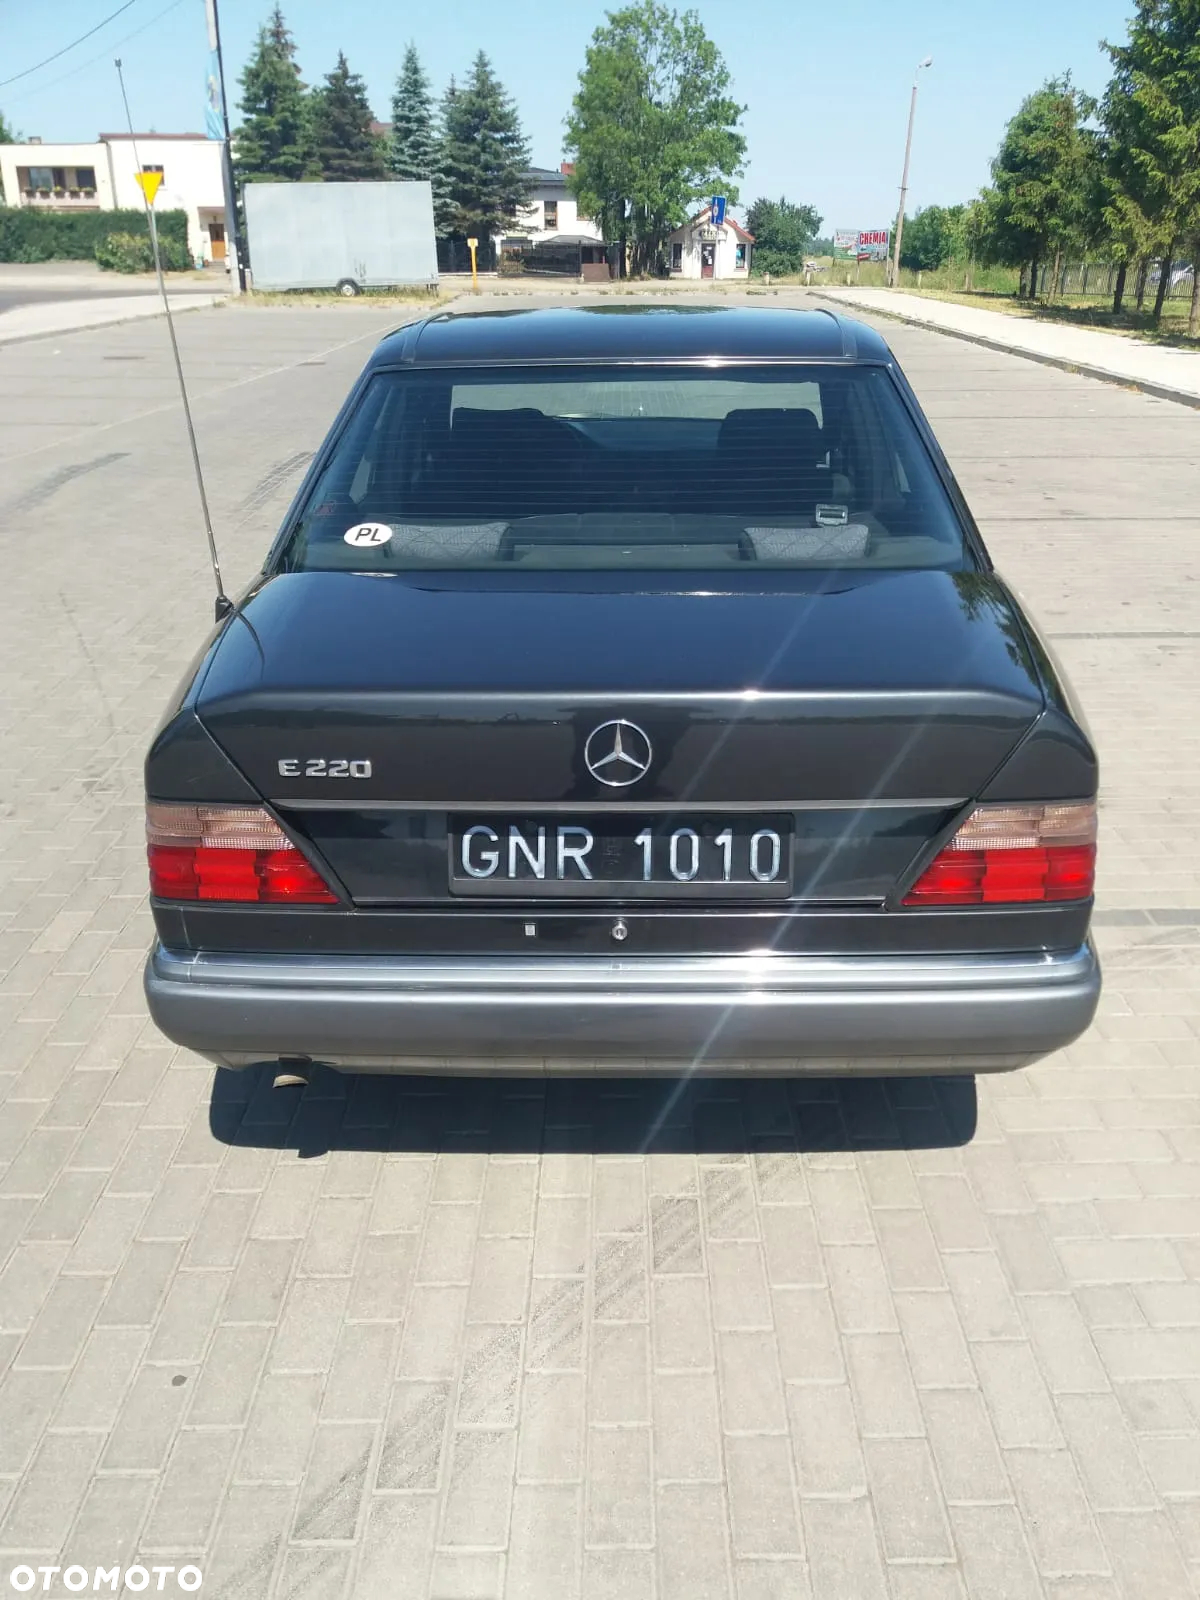 Mercedes-Benz W124 (1984-1993) - 4